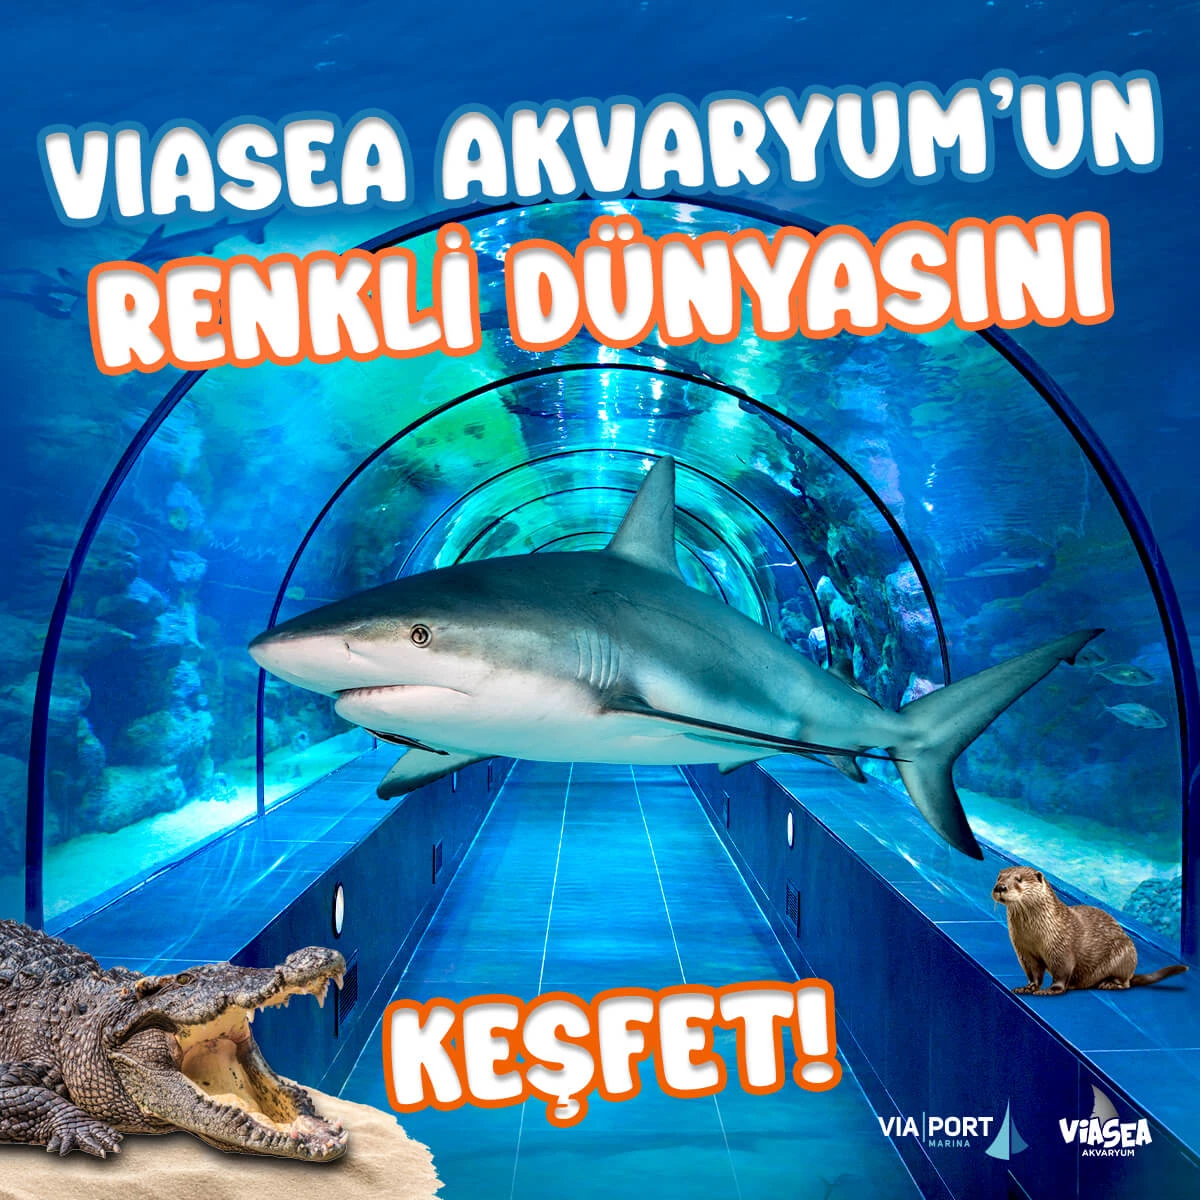 Viasea-Aquarium Ticket – 2